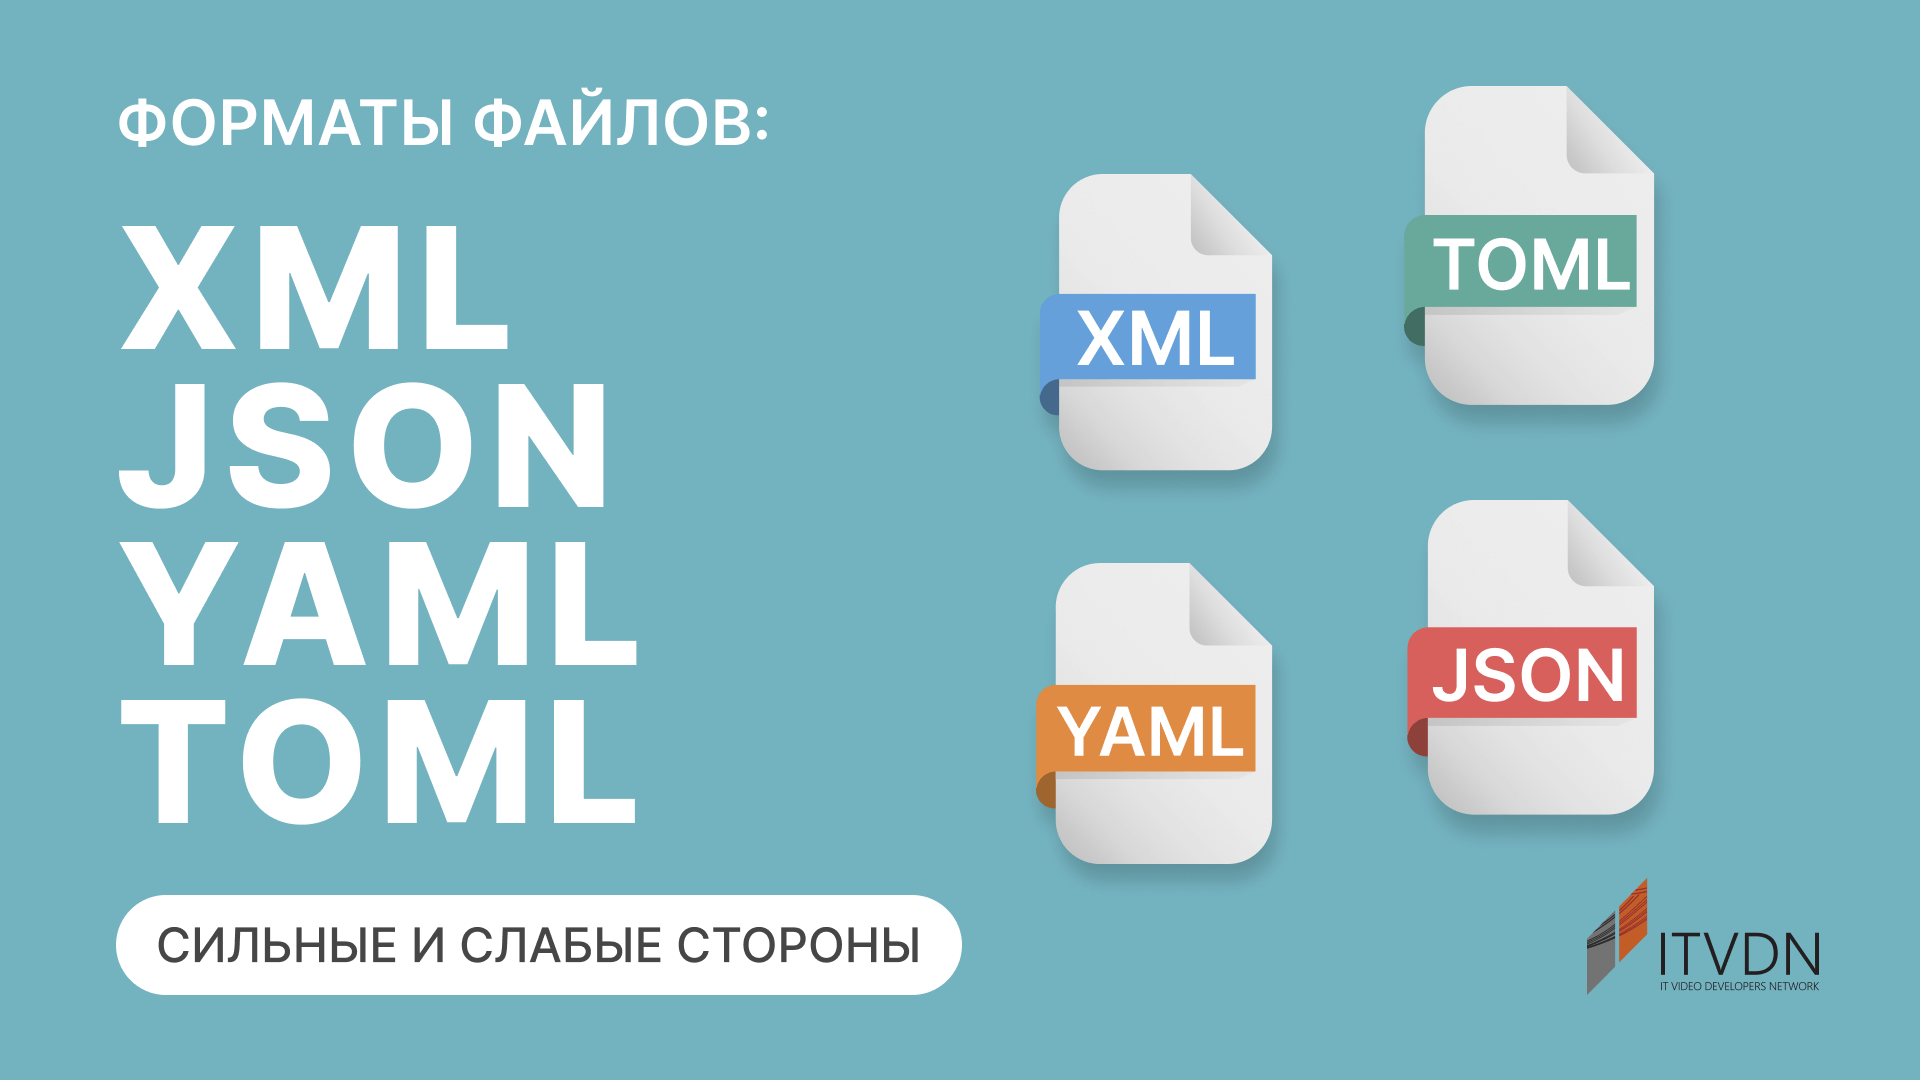 Форматы файлов XML, JSON, YAML и TOML: сильные и слабые стороны